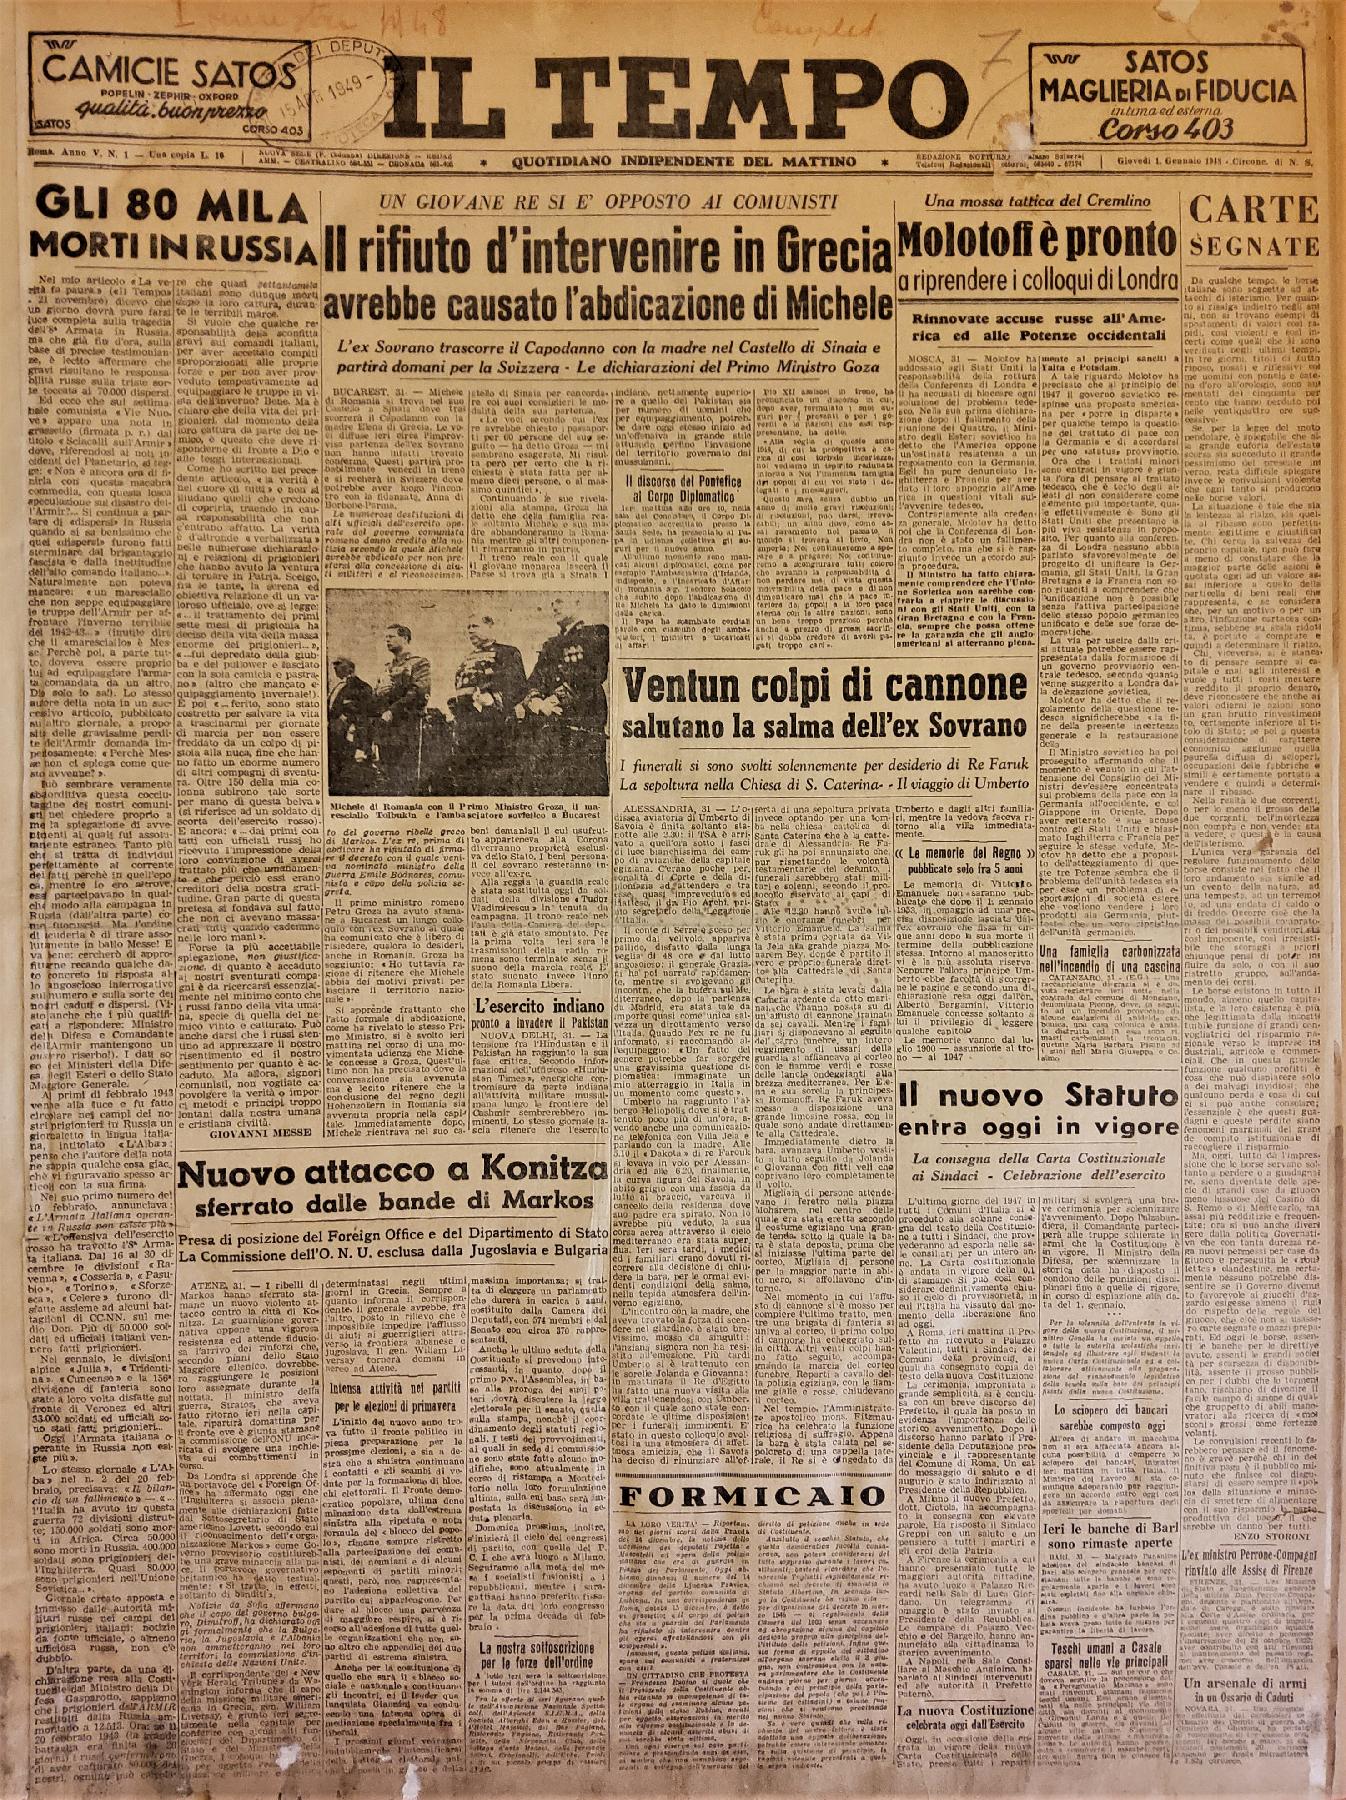 1° gennaio 1948 - Prima pagina del quotidiano "Il Tempo".